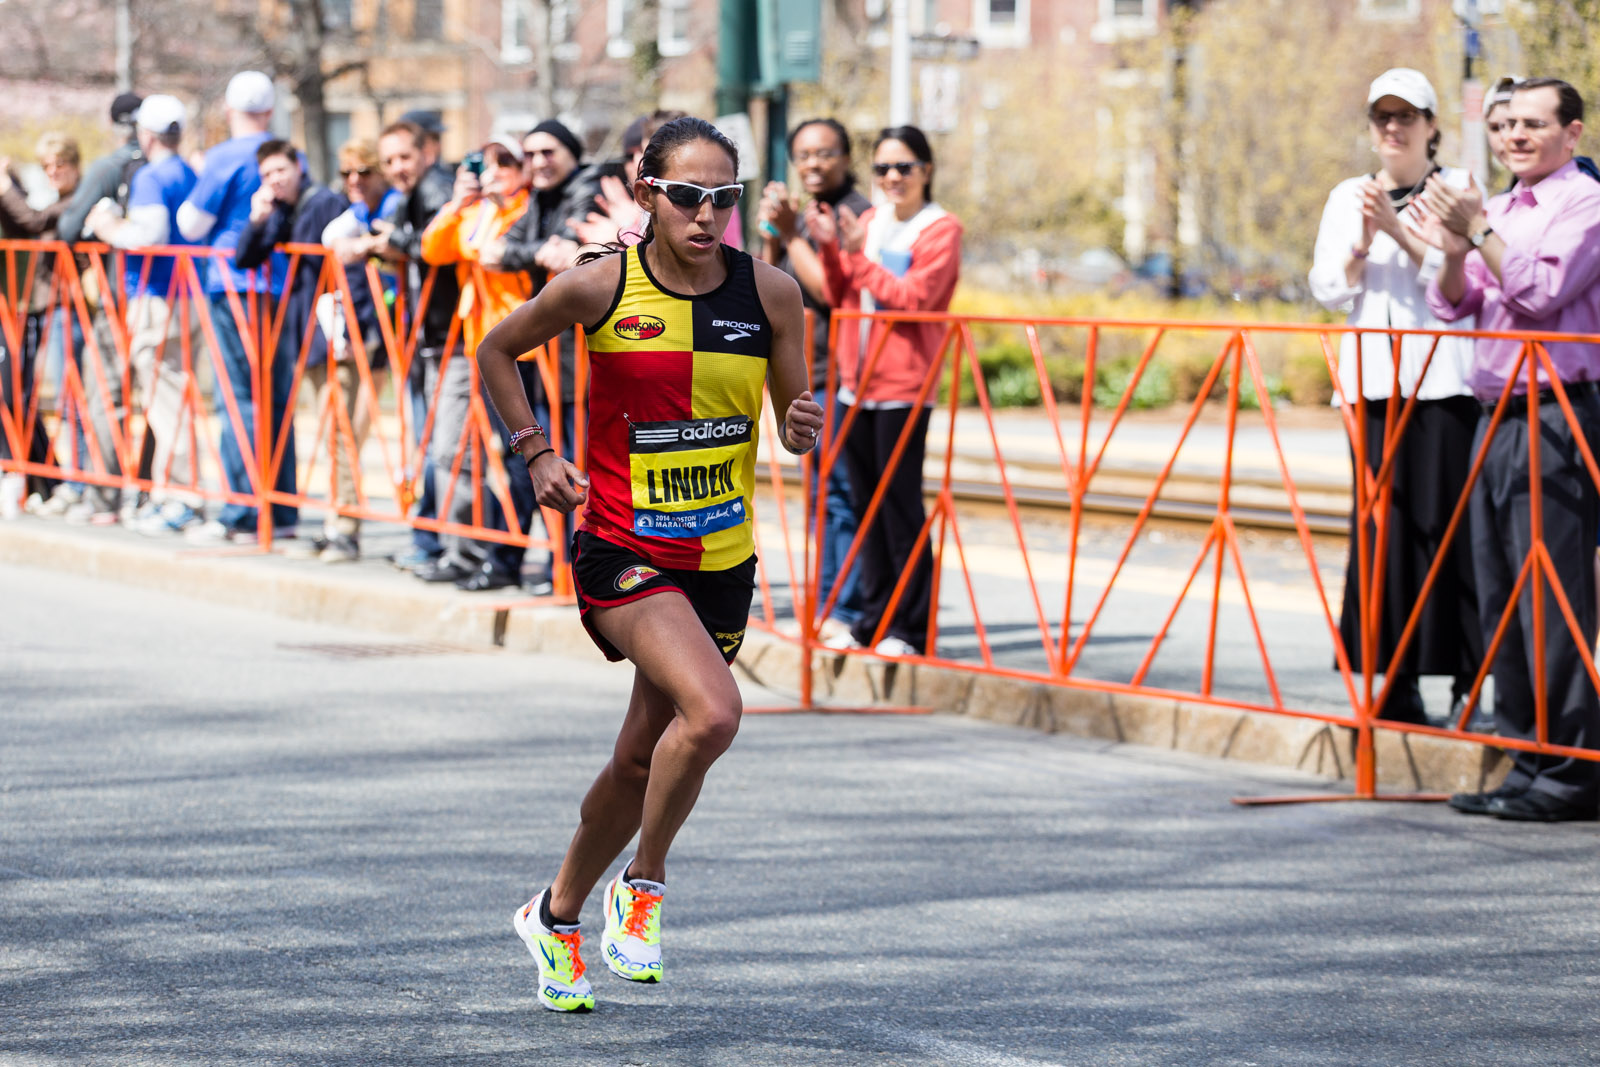 Des Linden (2014 Boston Marathon)